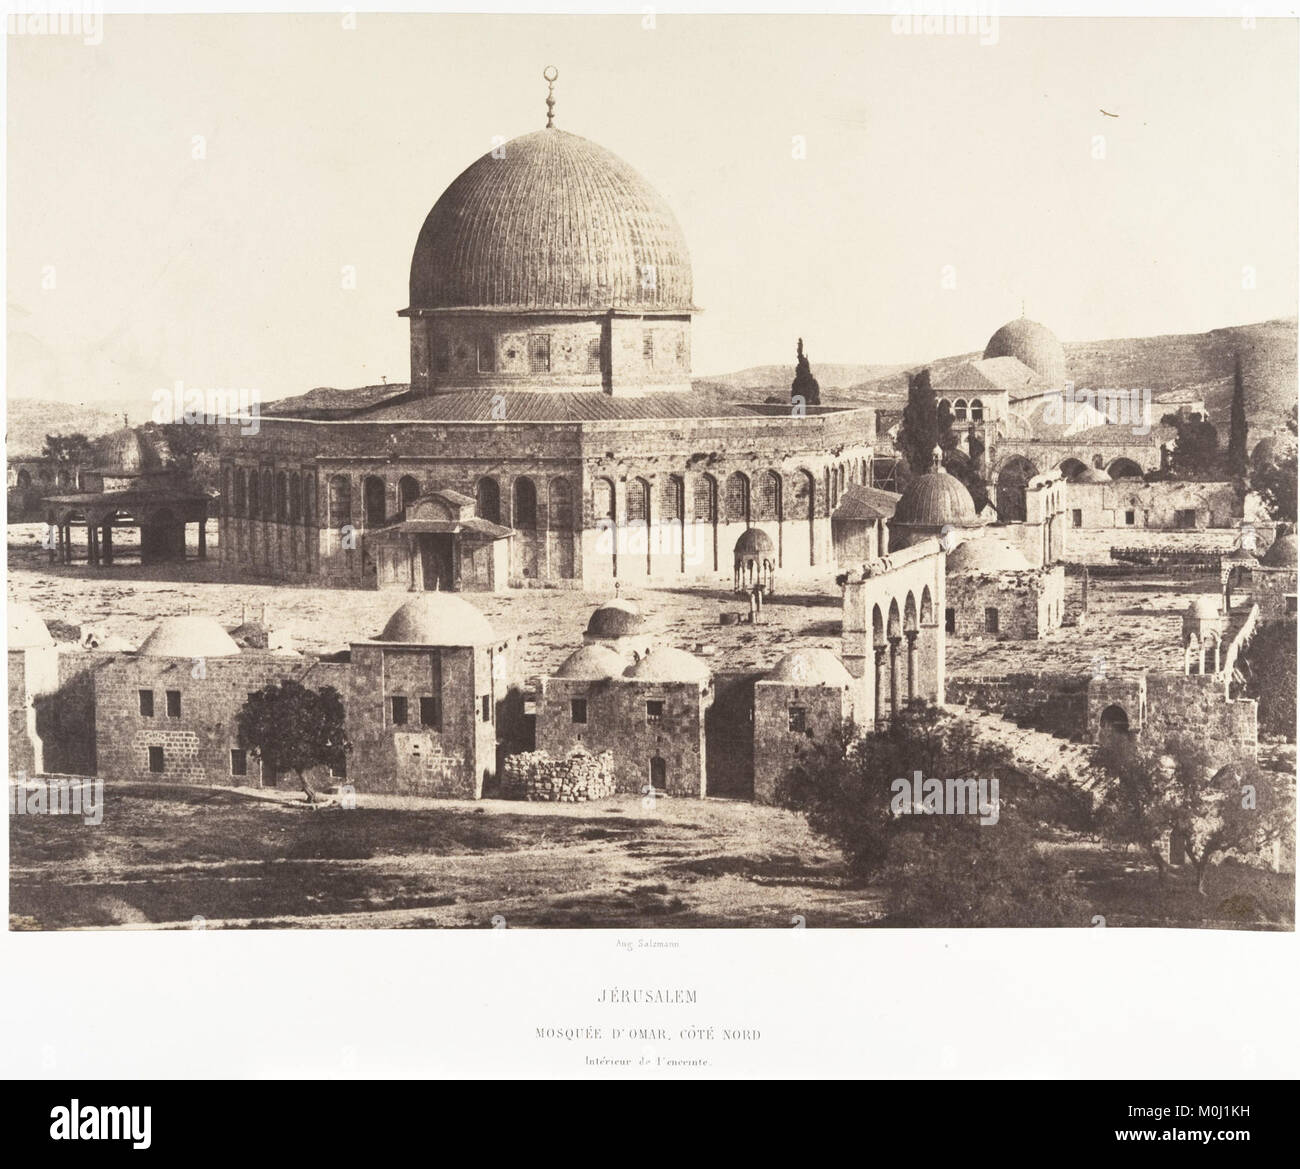 Jérusalem, Mosquée d'Omar, Côté Nord, Intérieur de l'enceinte MET DP 131349 Stockfoto